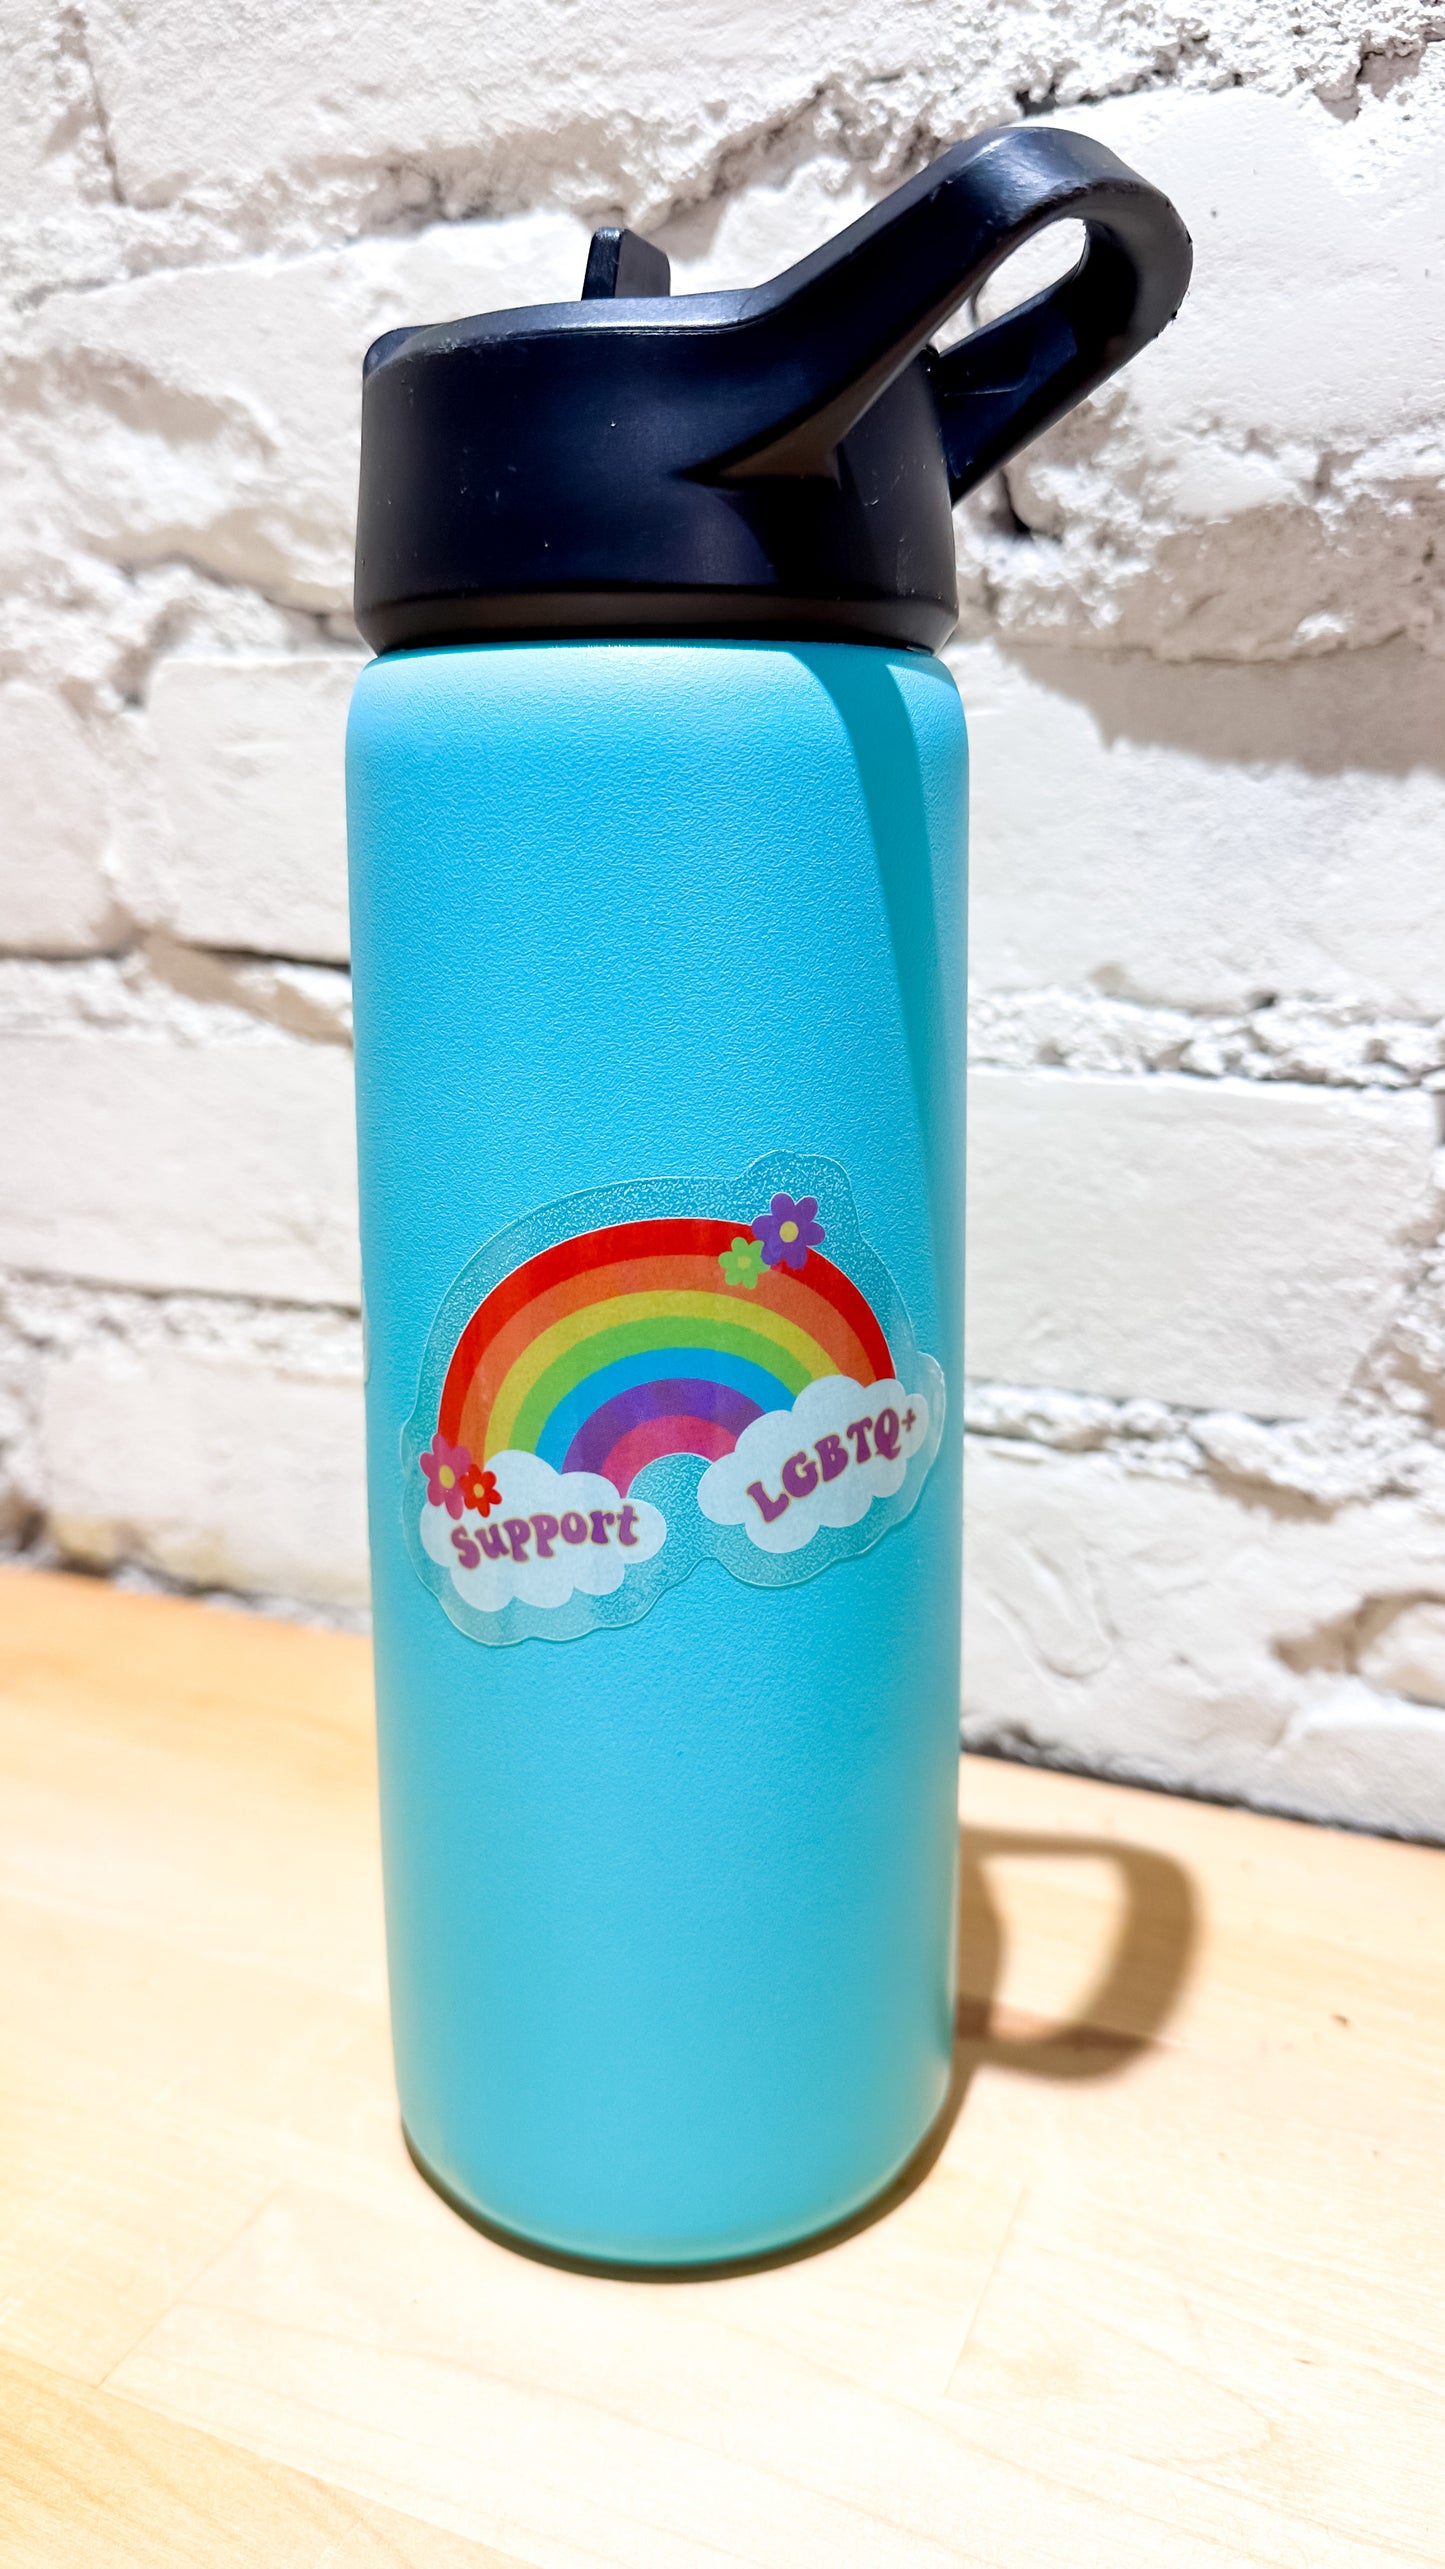 Support LGBTQ+ Rainbow Sticker